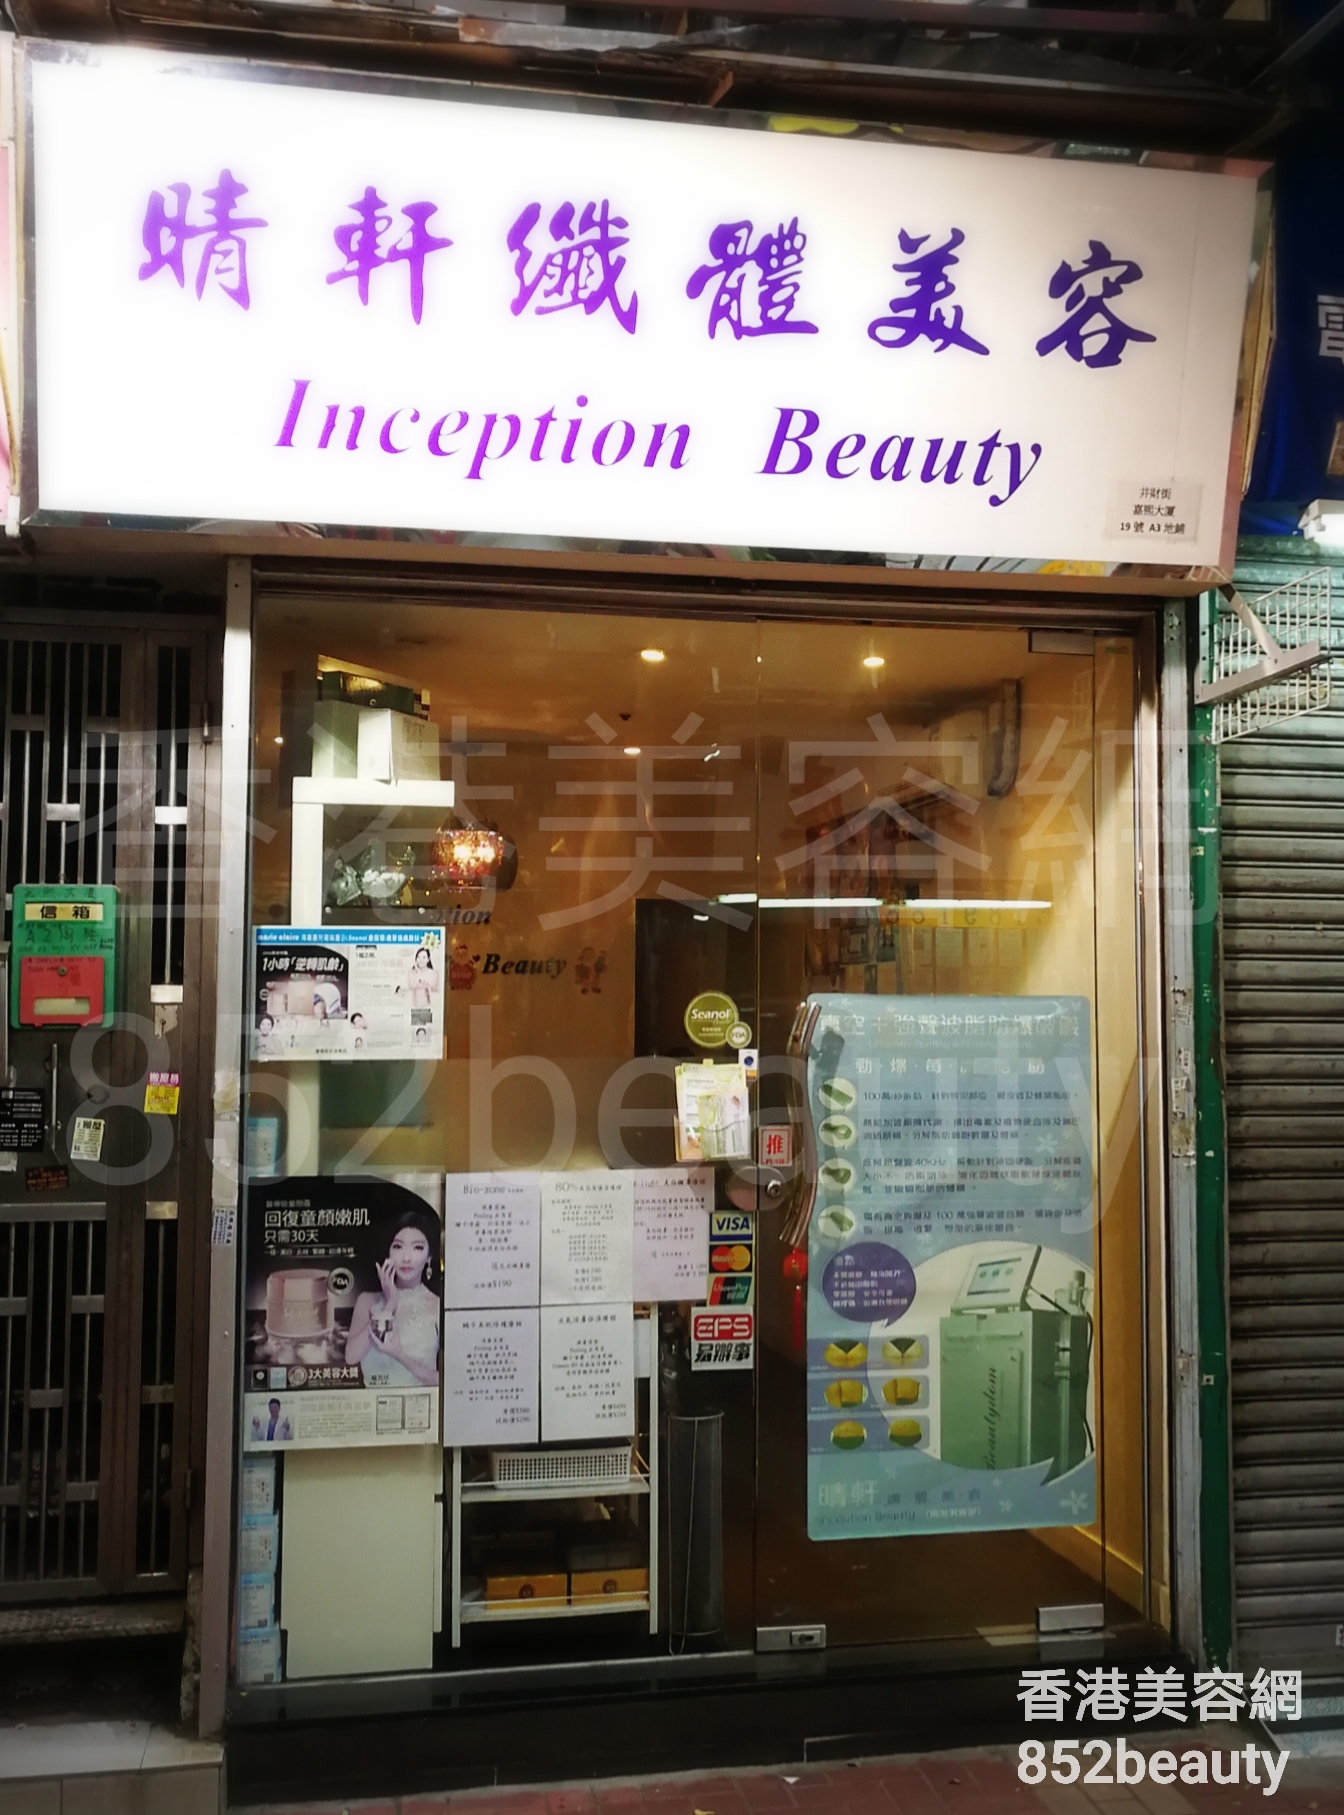 香港美容網 Hong Kong Beauty Salon 美容院 / 美容師: 晴軒纖體美容 Inception Beauty